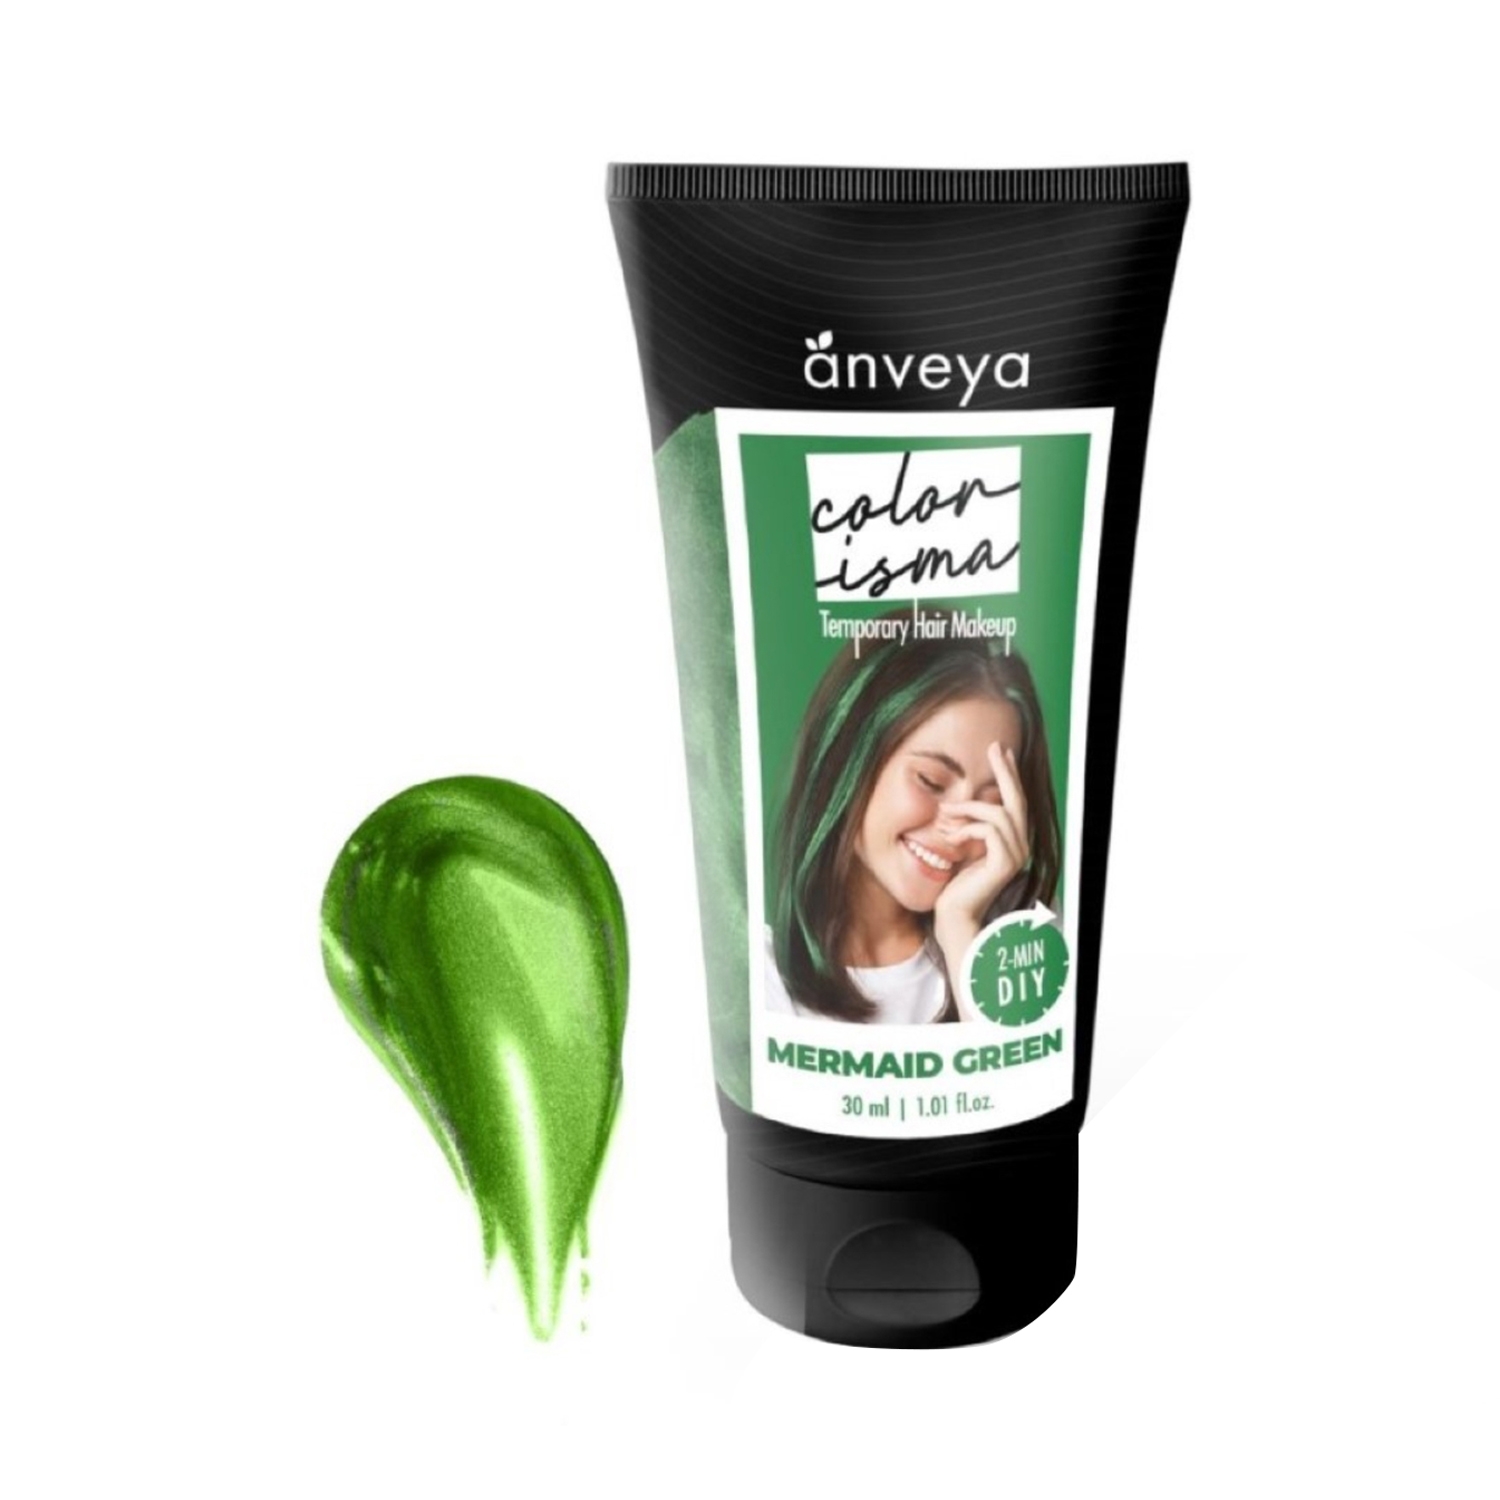 Anveya | Anveya Colorisma Hair Color Makeup - Mermaid Green (30ml)